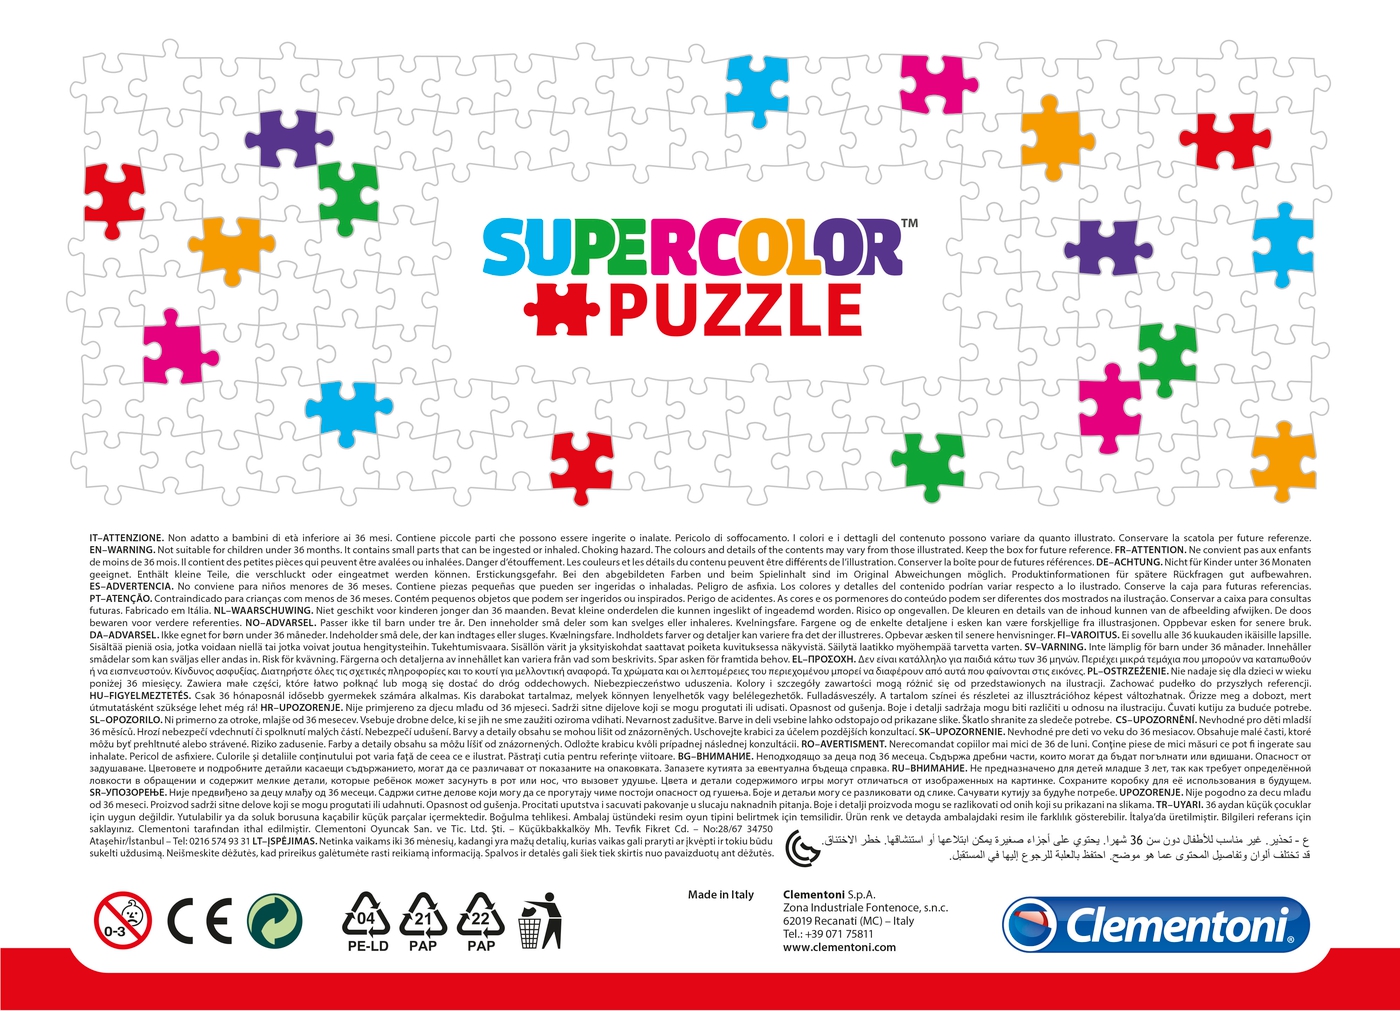 Disney Toy Story 4 104 Pieces Supercolor Puzzle Clementoni